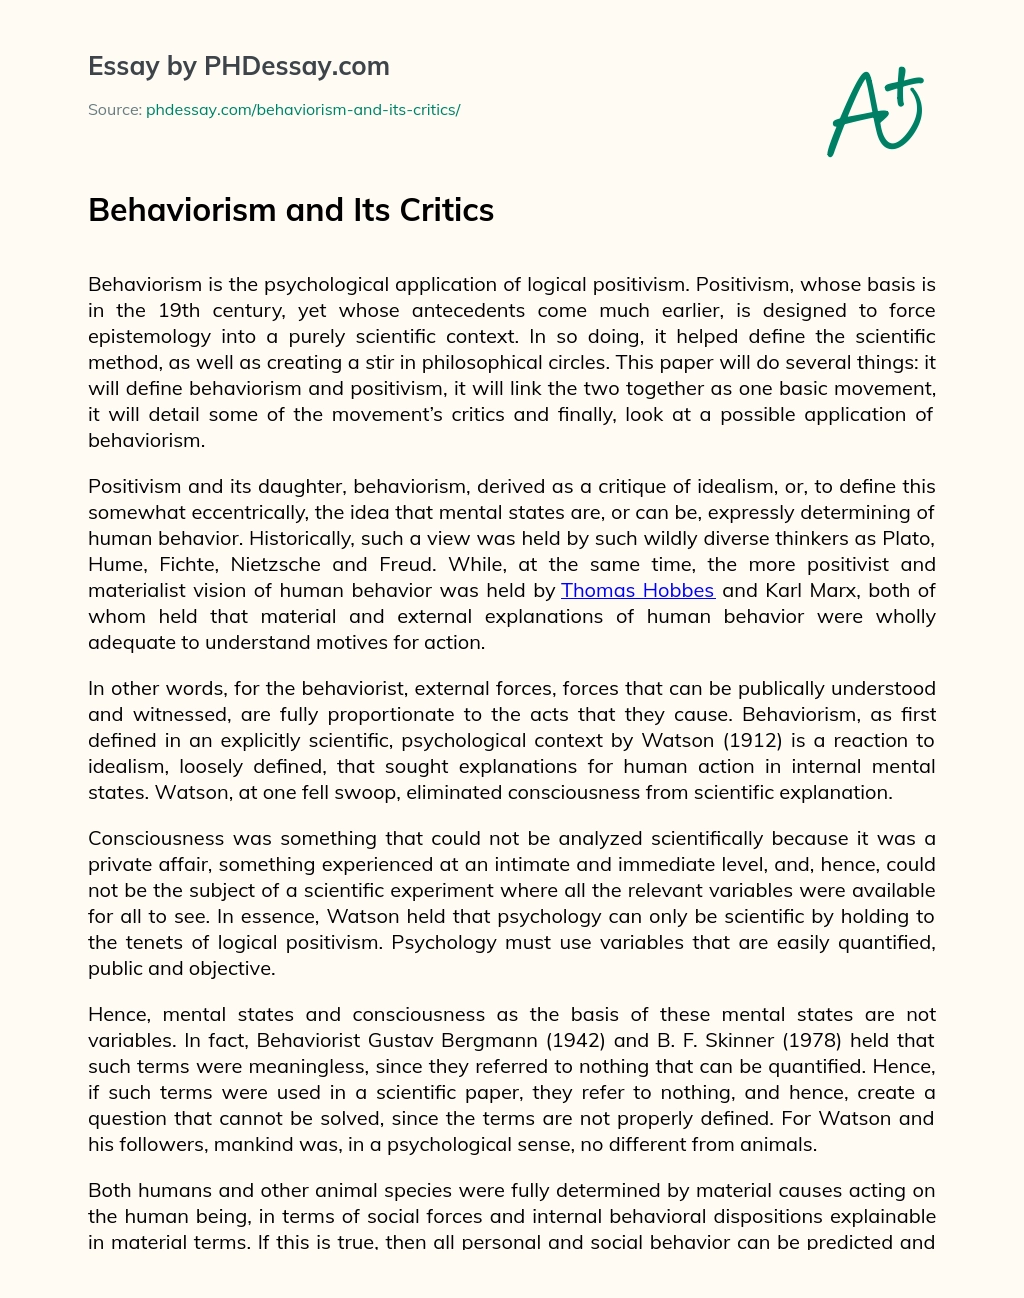 Behaviorism and Its Critics essay